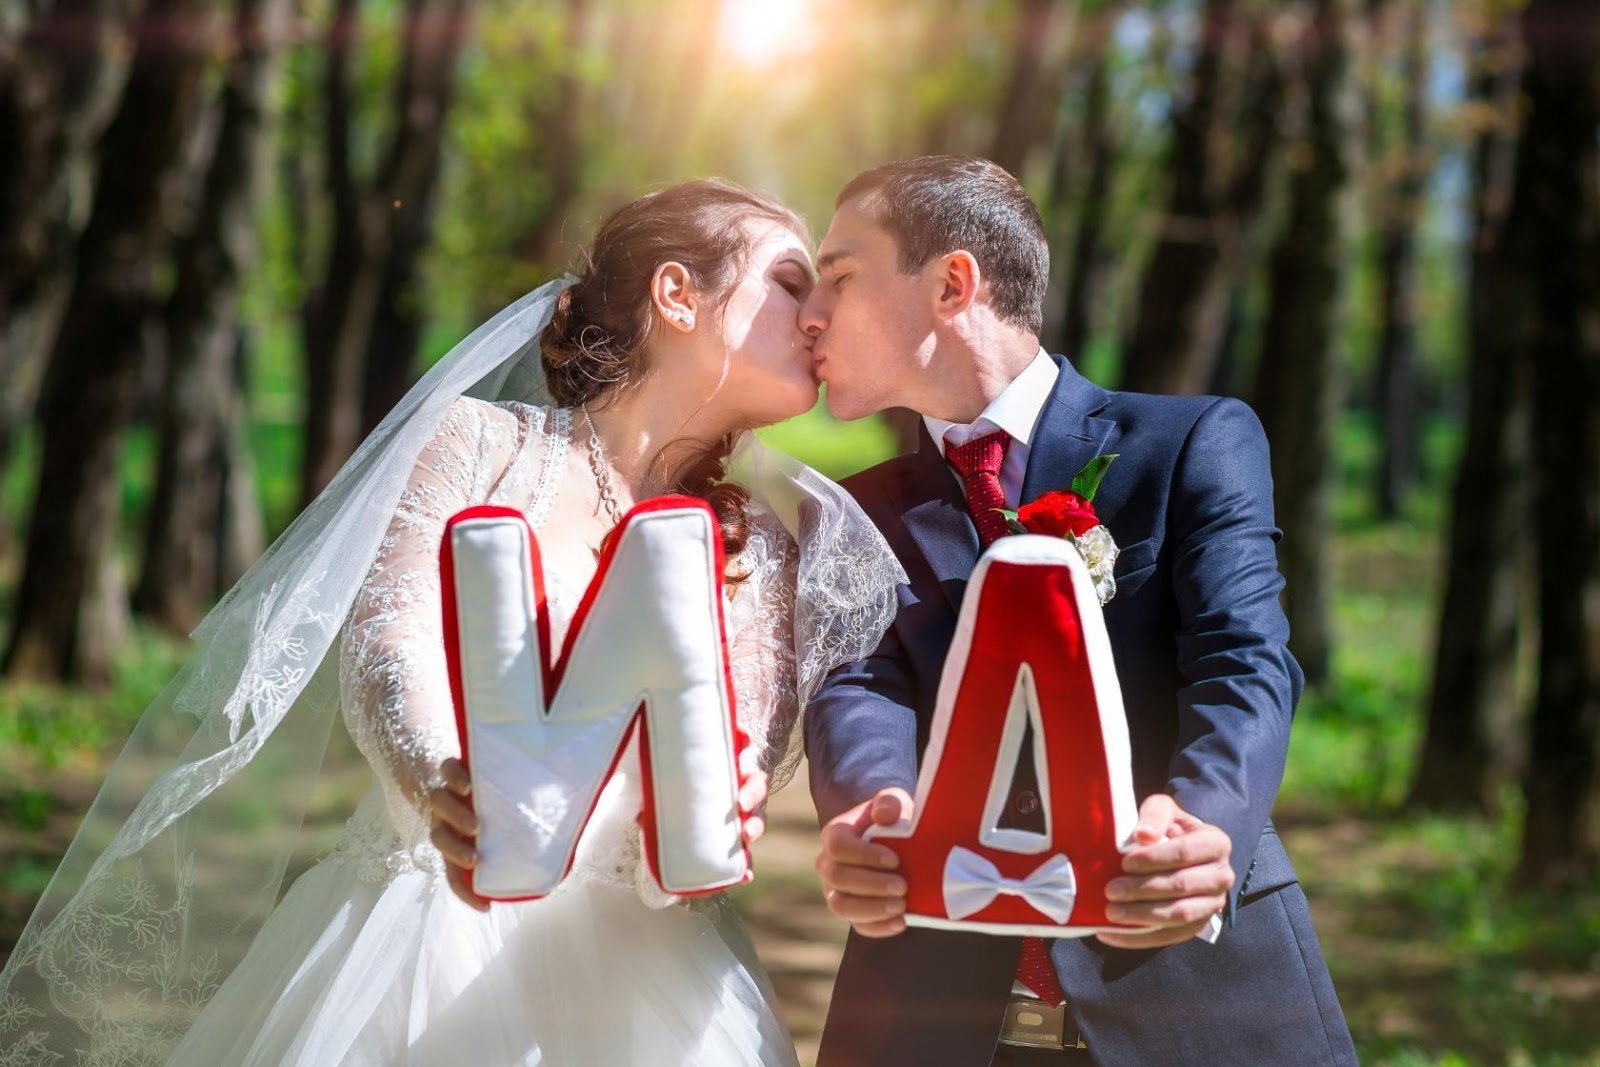 ᐉ объемные буквы на свадьбу своими руками + 3 мастер-класса с фото и видео